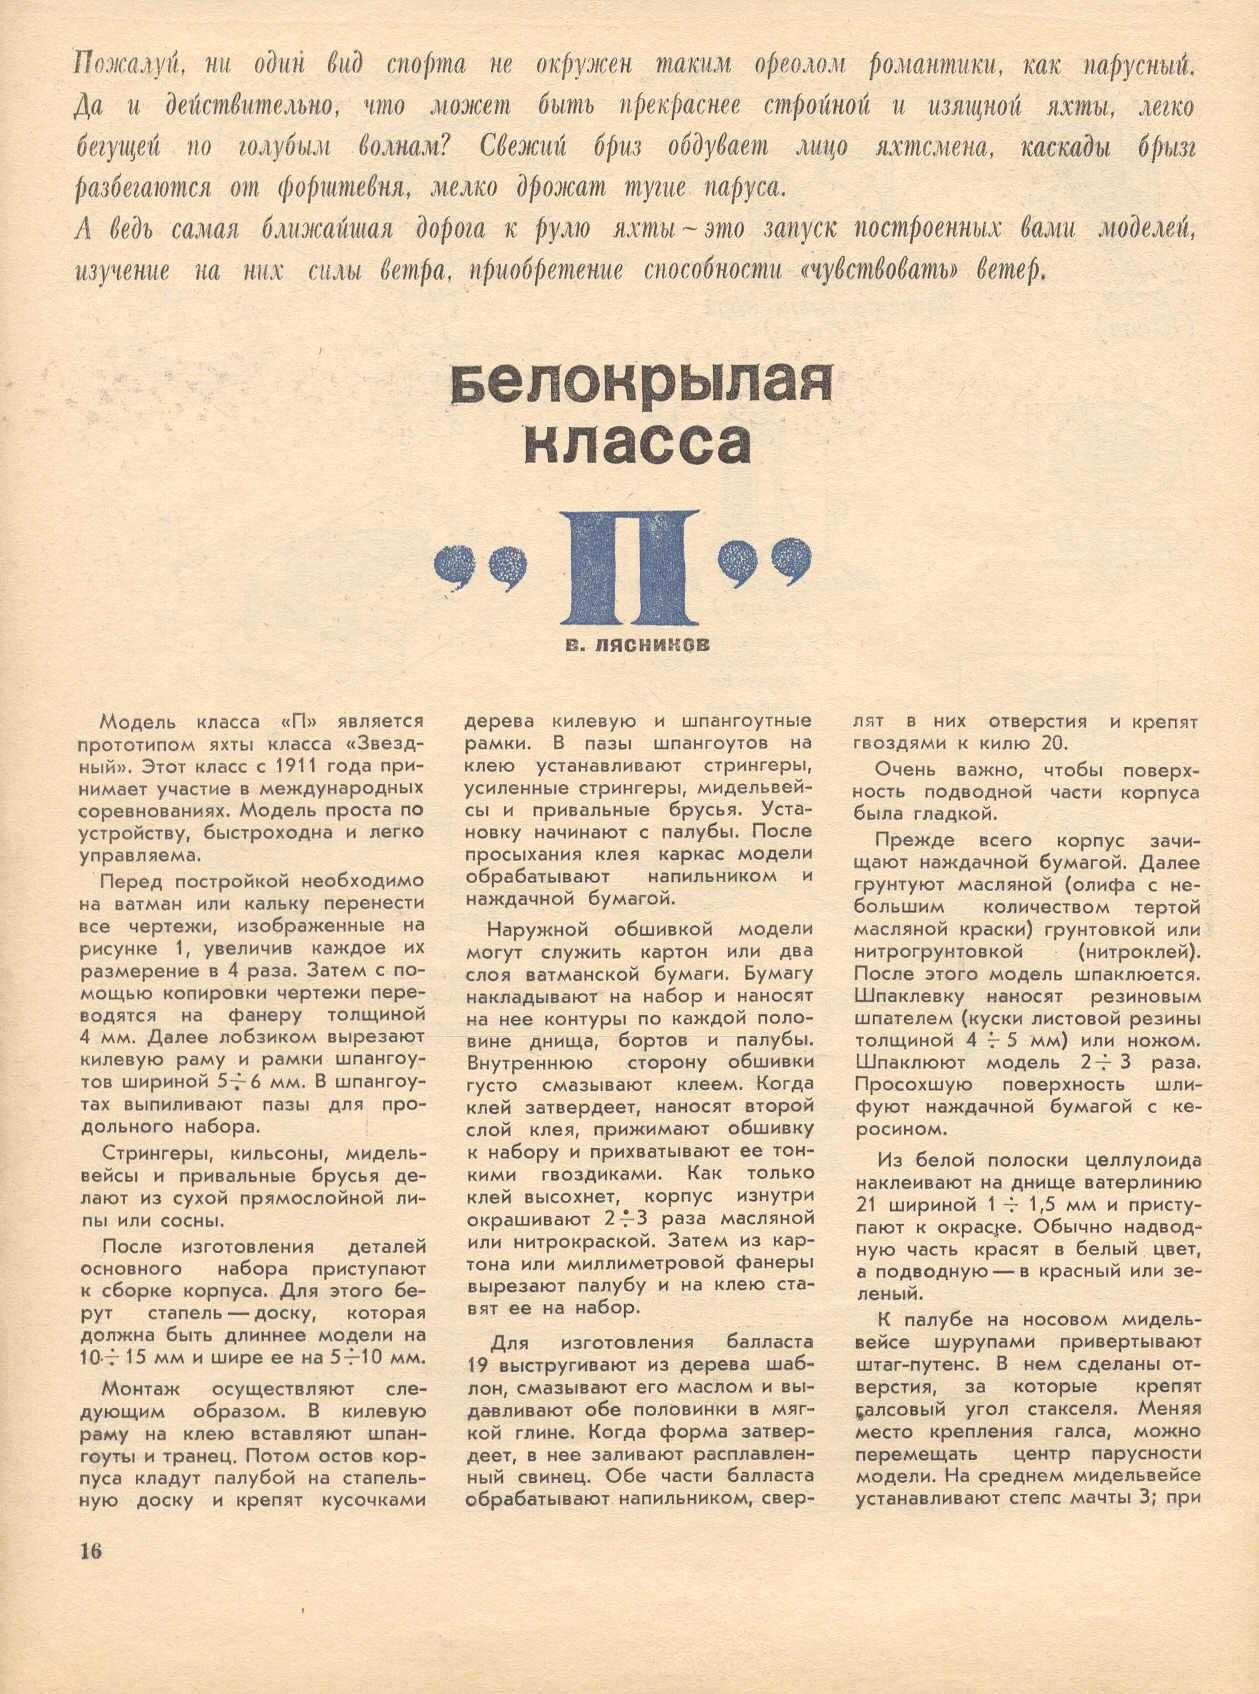 МК 2, 1966, 16 c.